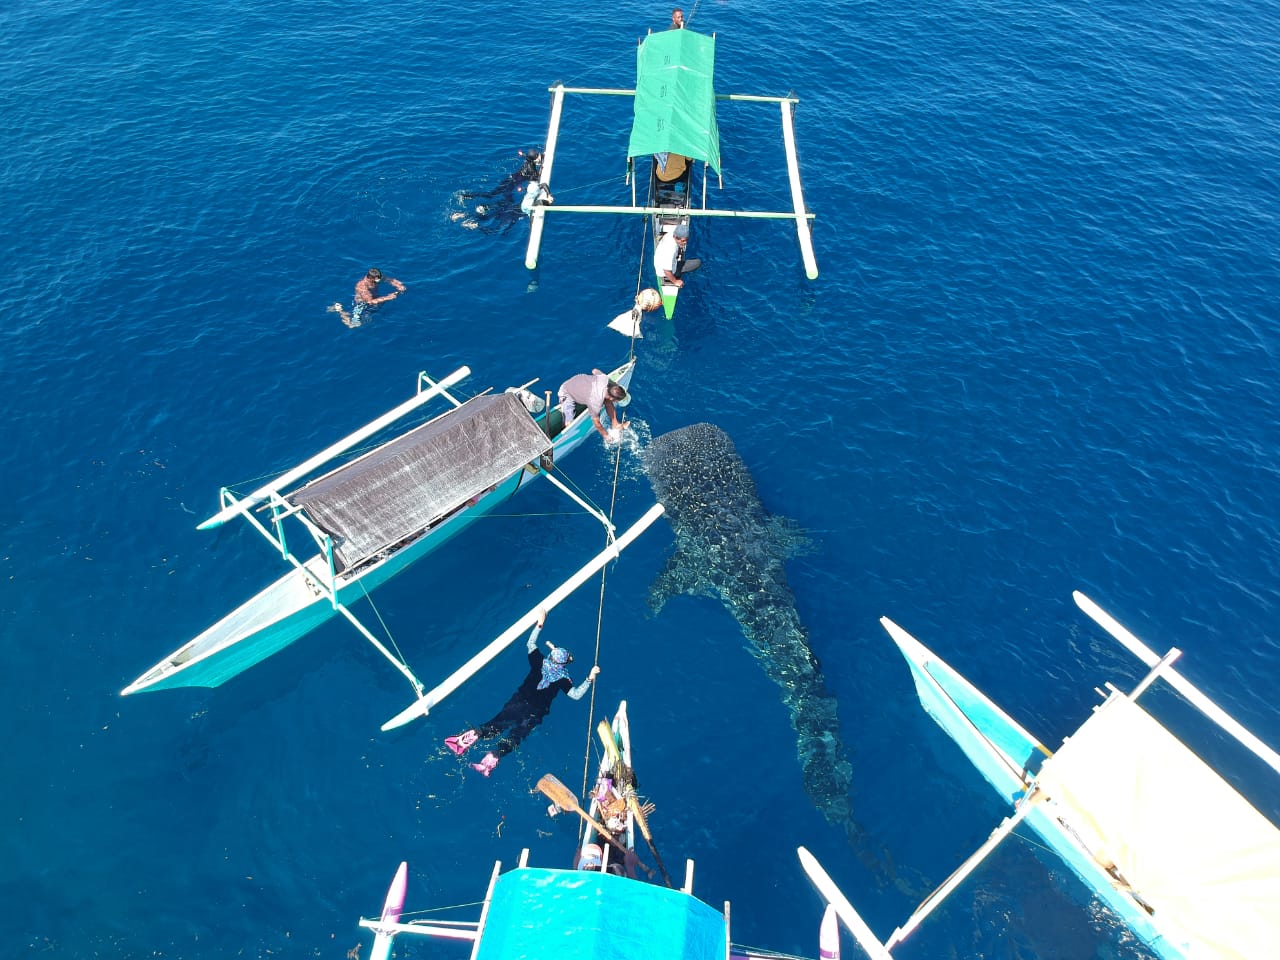  Kehadiran hiu paus di pantai Botubarani, Gorontalo telah menjadi magnet bagi wisatawan. Tampak pengujung berinteraksi dengan hiu paus | Foto: Adiwinata Solihin 